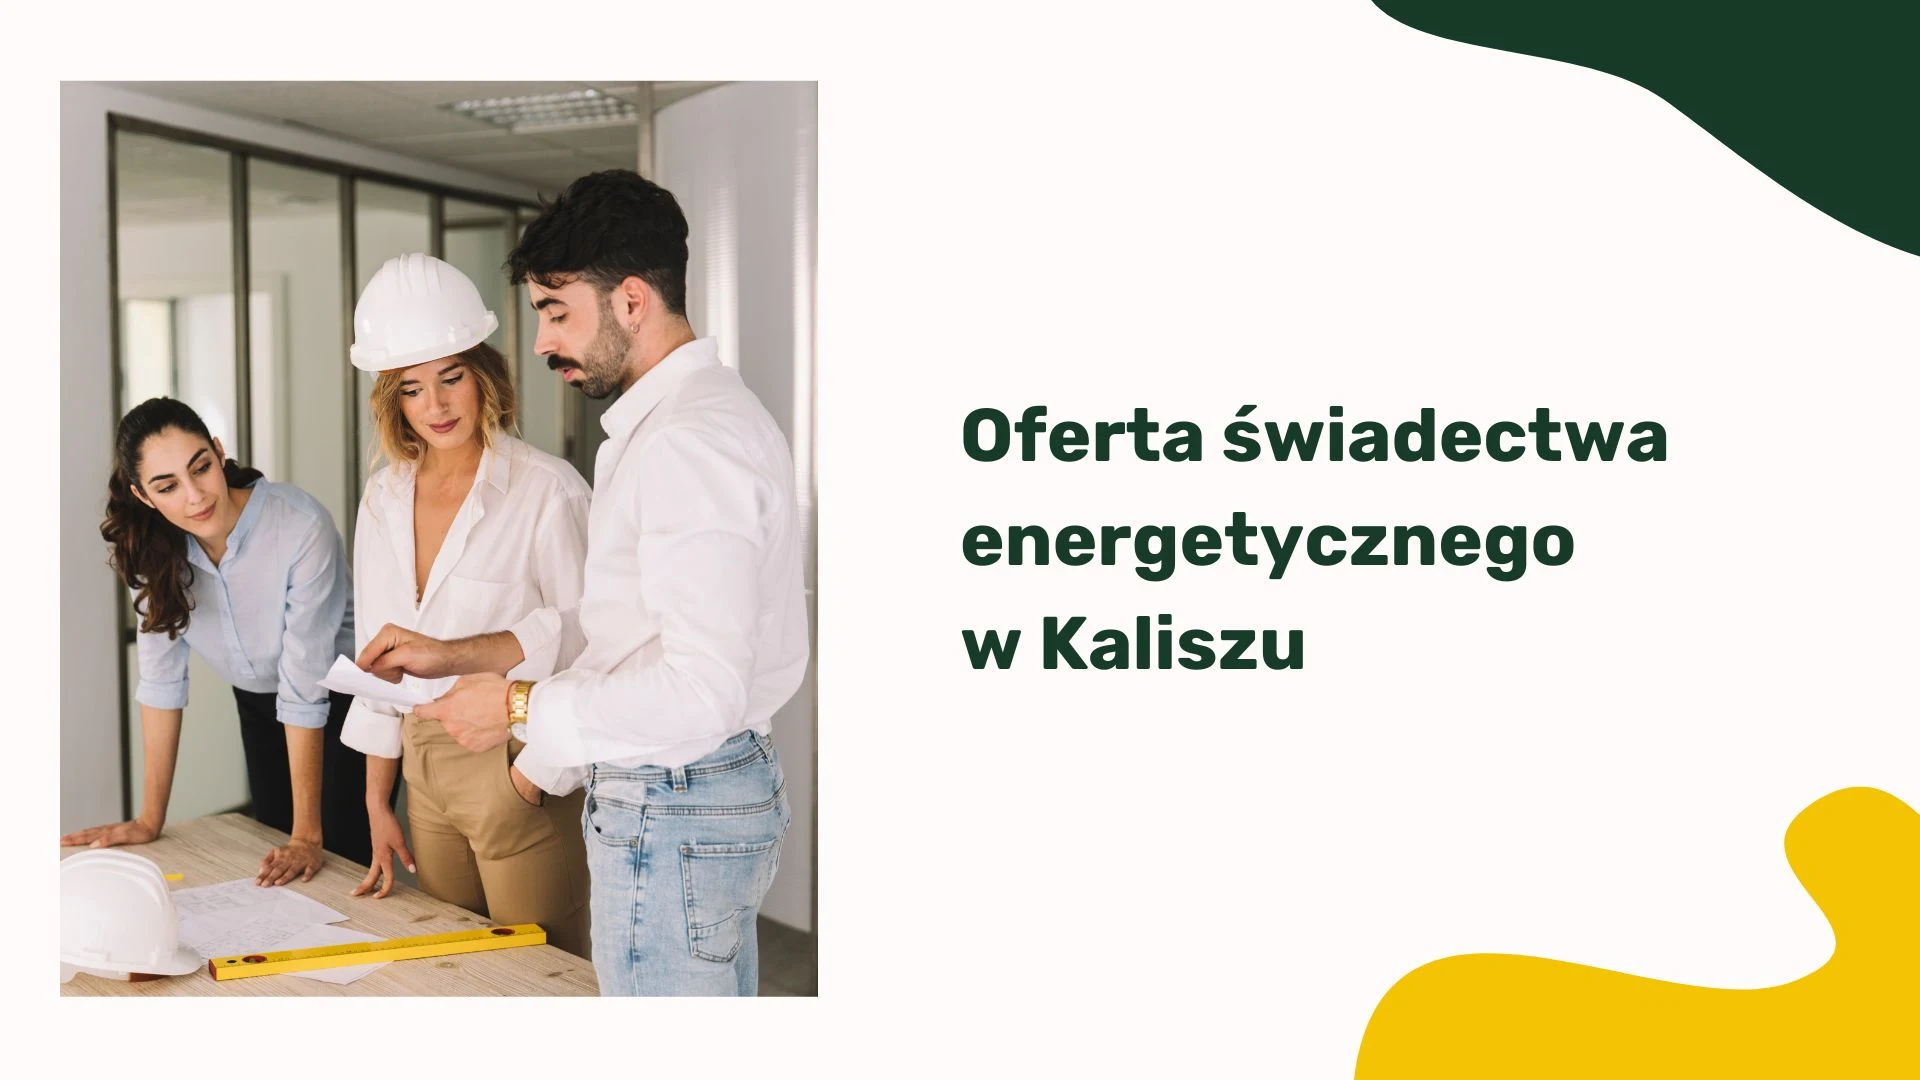 Oferta świadectwa energetycznego w Kaliszu